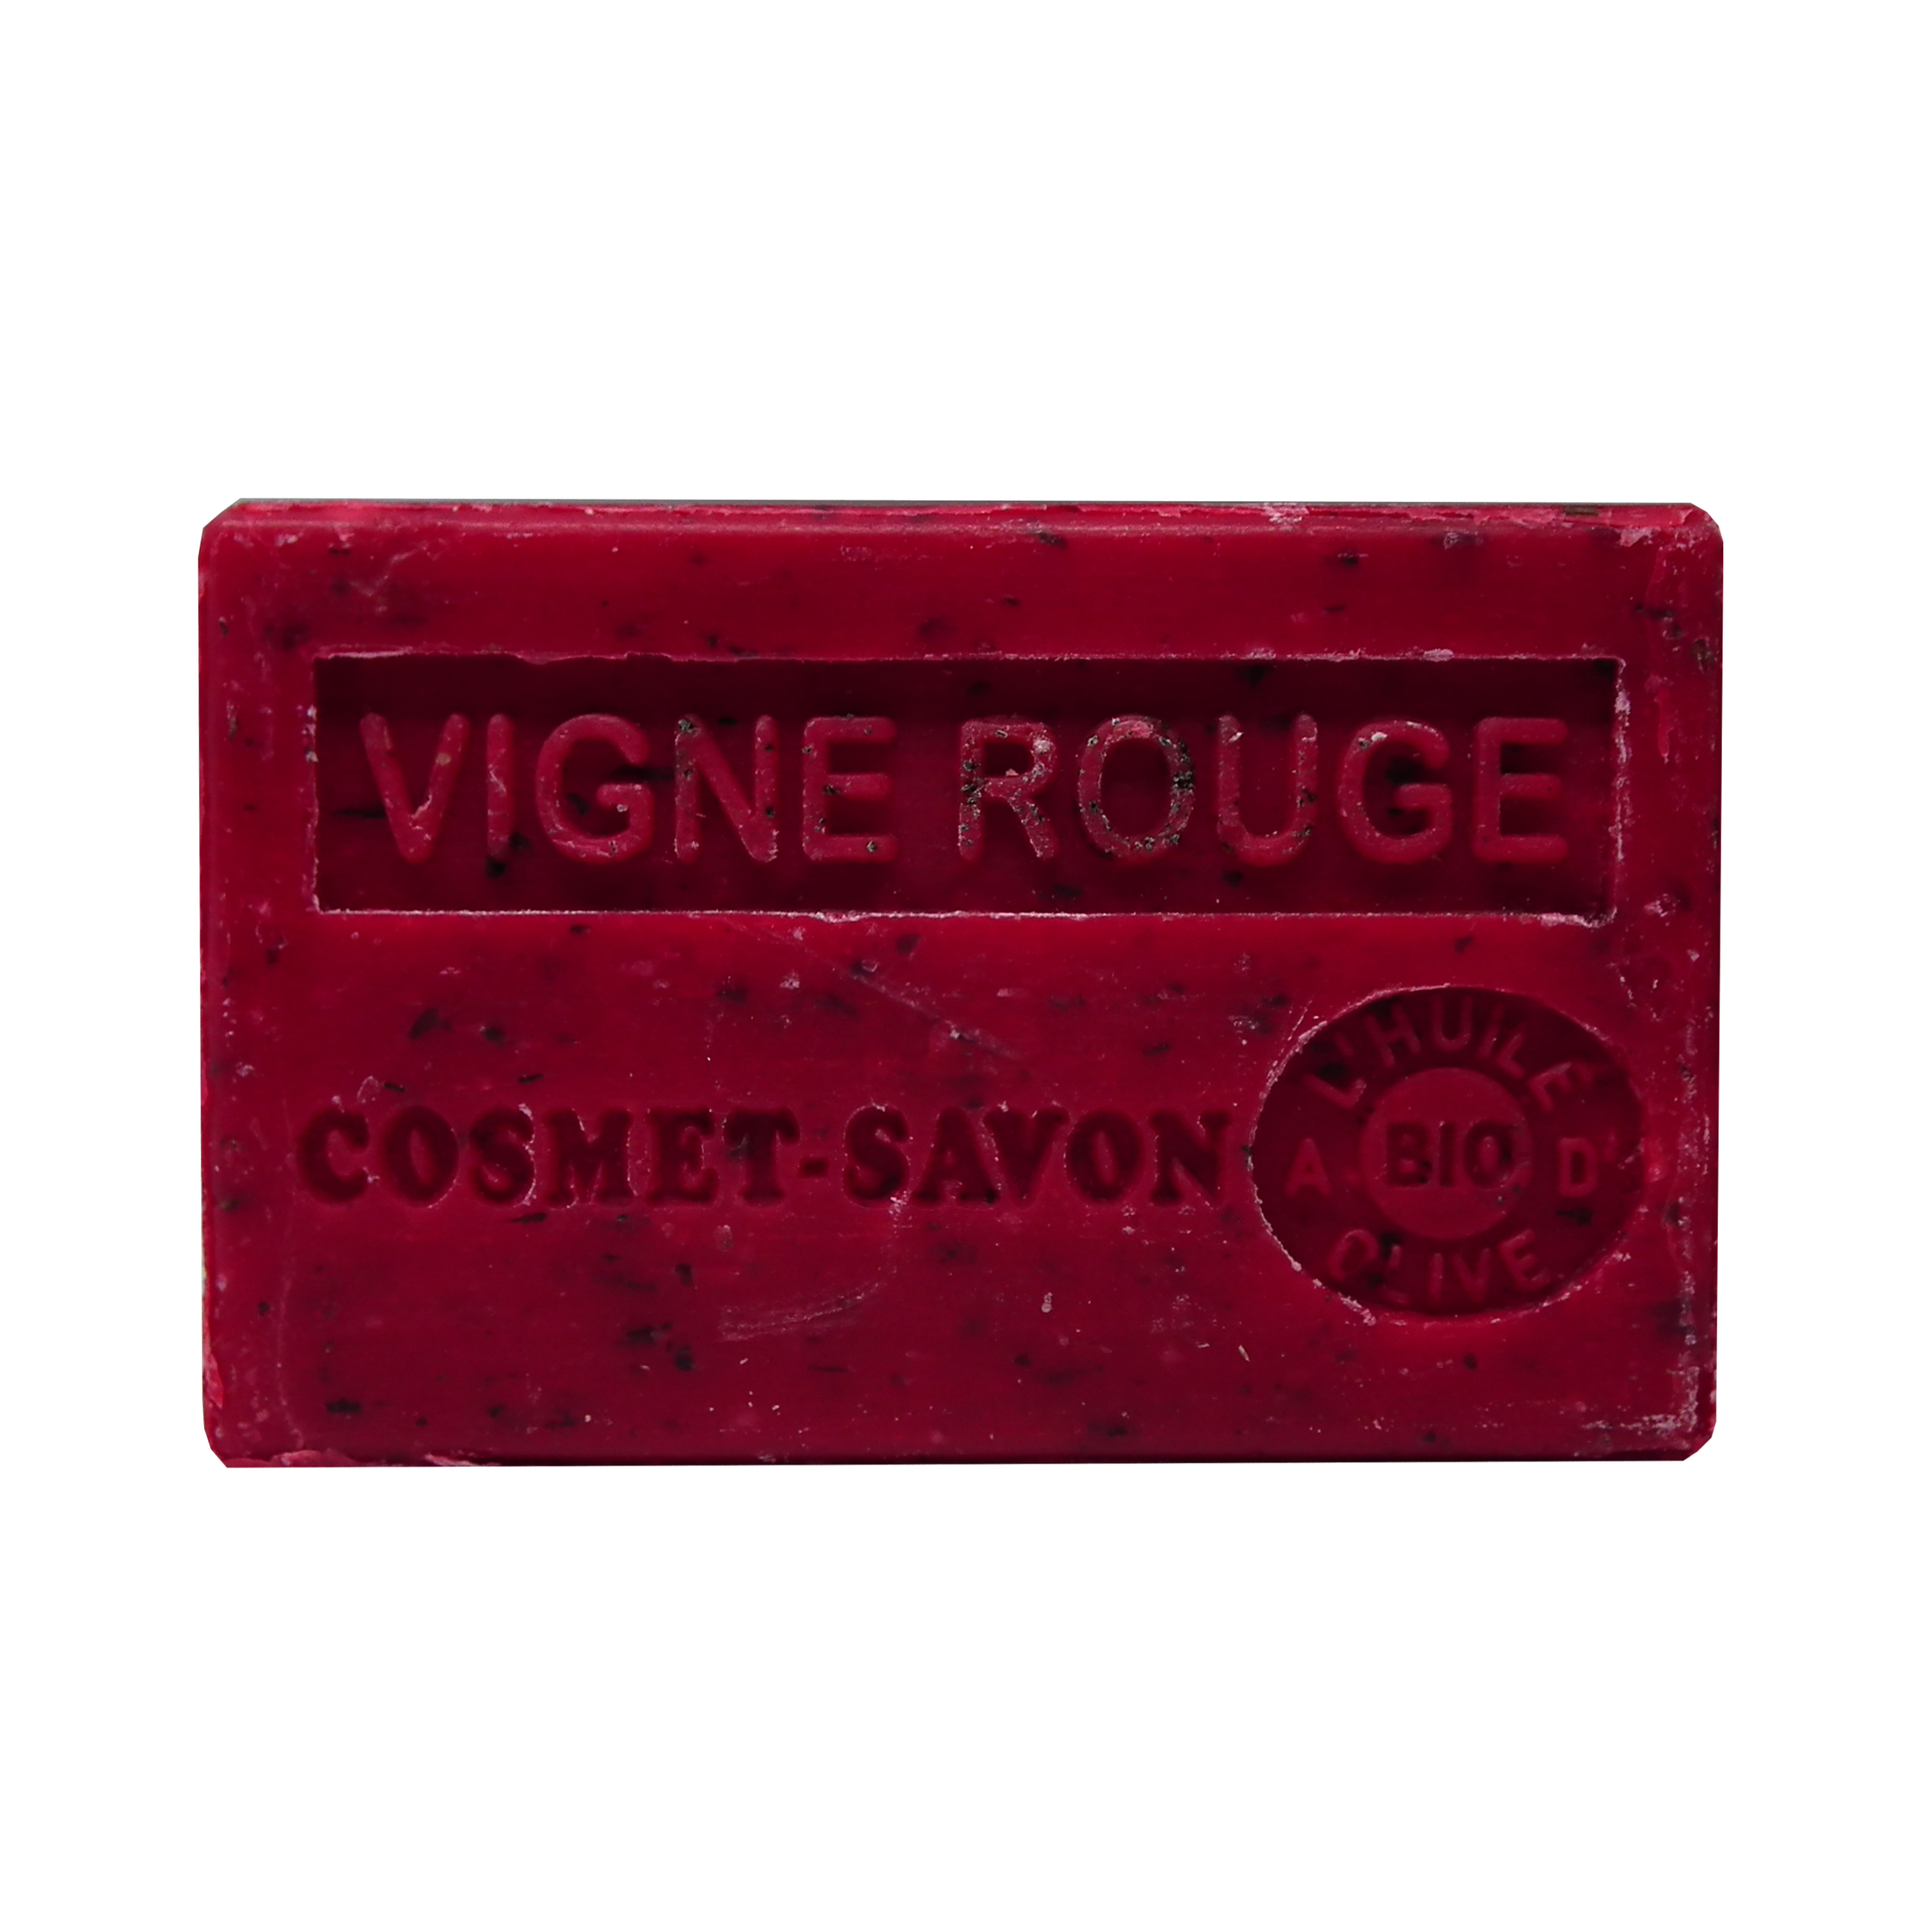 vigne-rouge-savon-125gr-au-beurre-de-karite-bio-cosmet-savon-3665205006829-face-JPEG